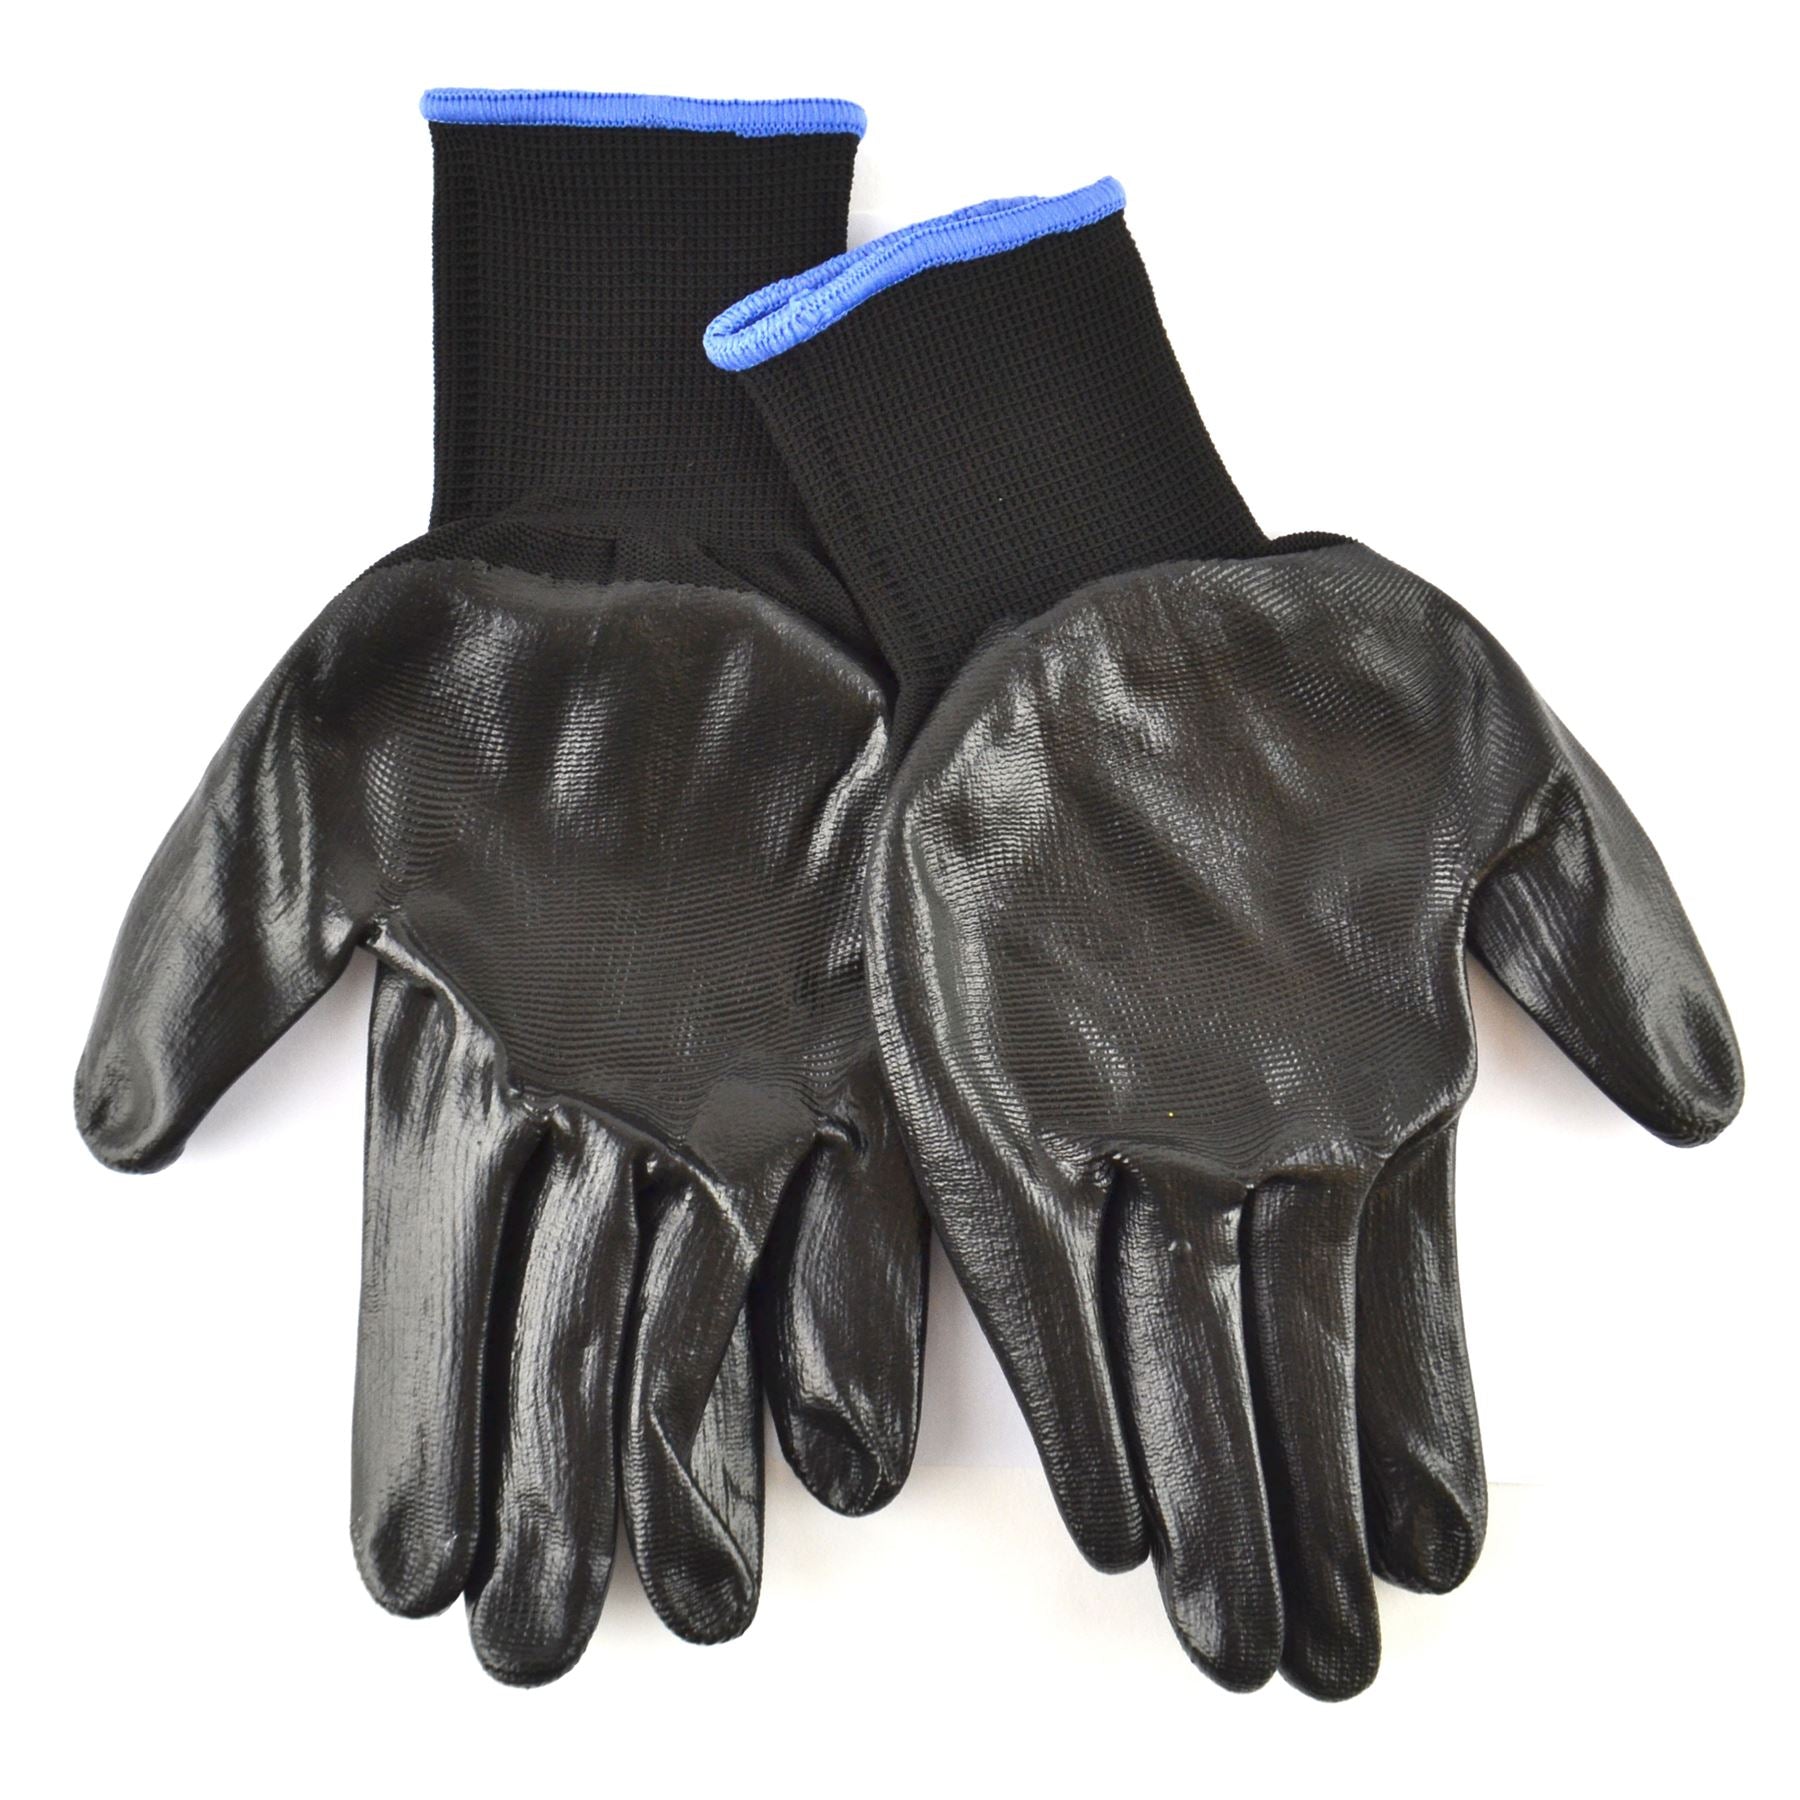 10.5" Nitrile Coated Work Gloves Breathable / Improved Grip Black